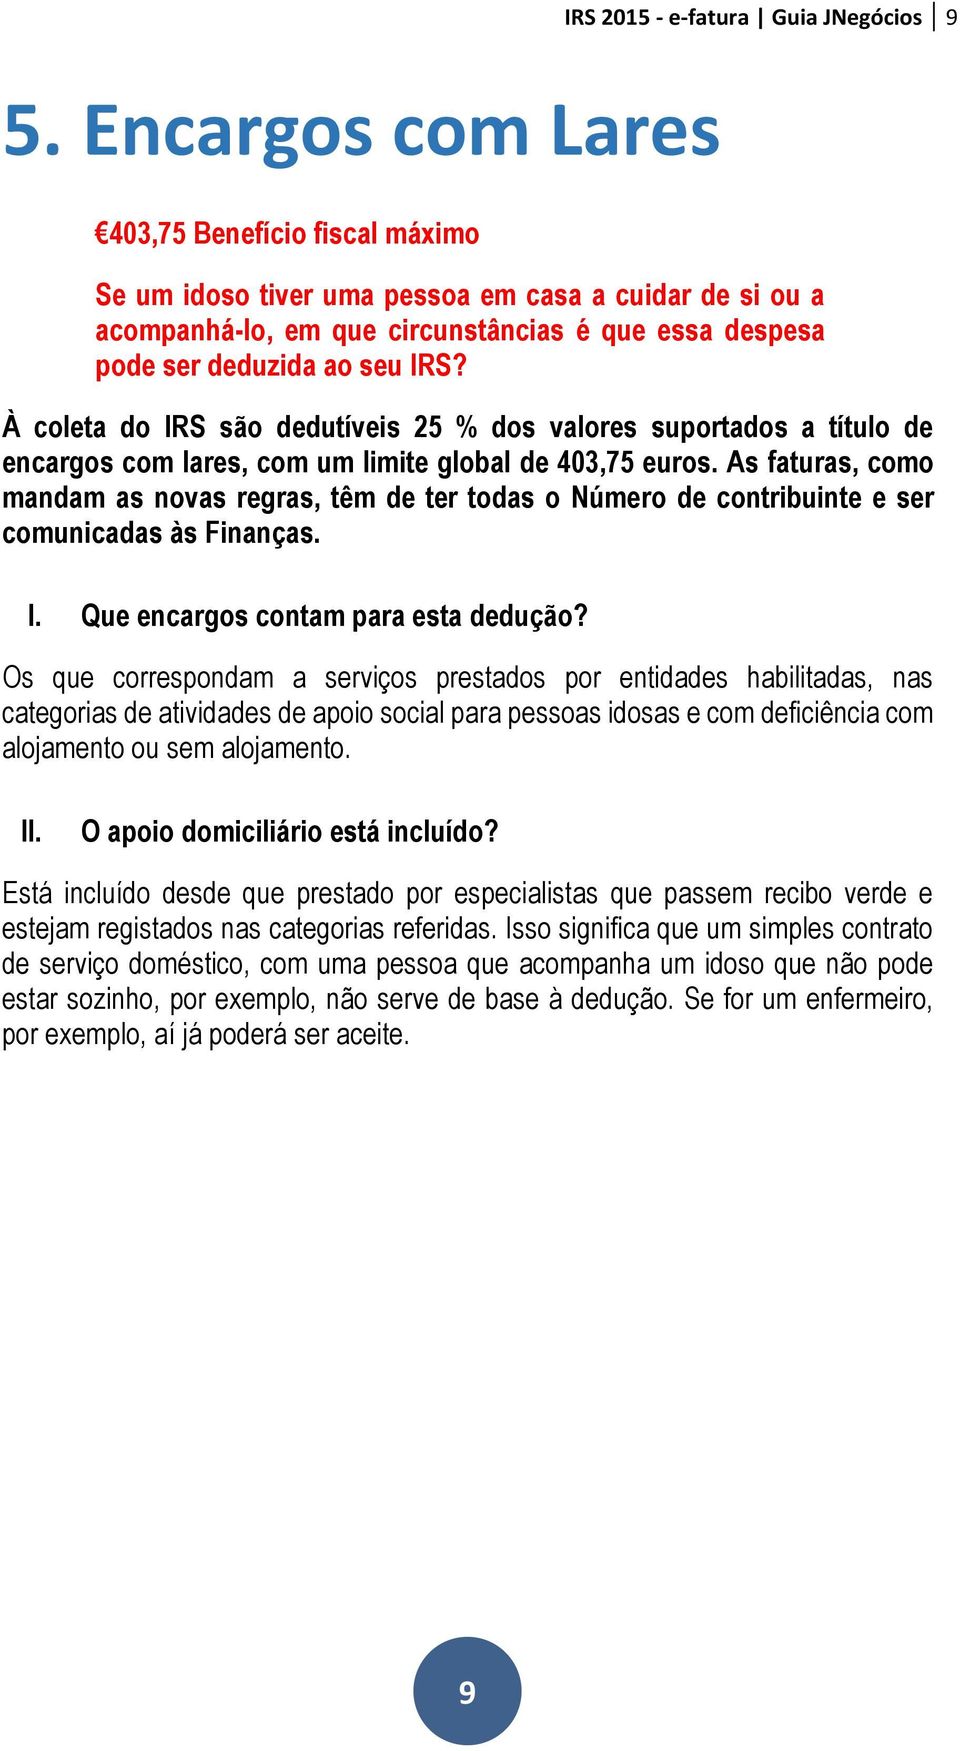 IRS E-FATURA. Perguntas e Respostas GUIA JNEGÓCIOS - PDF Free Download